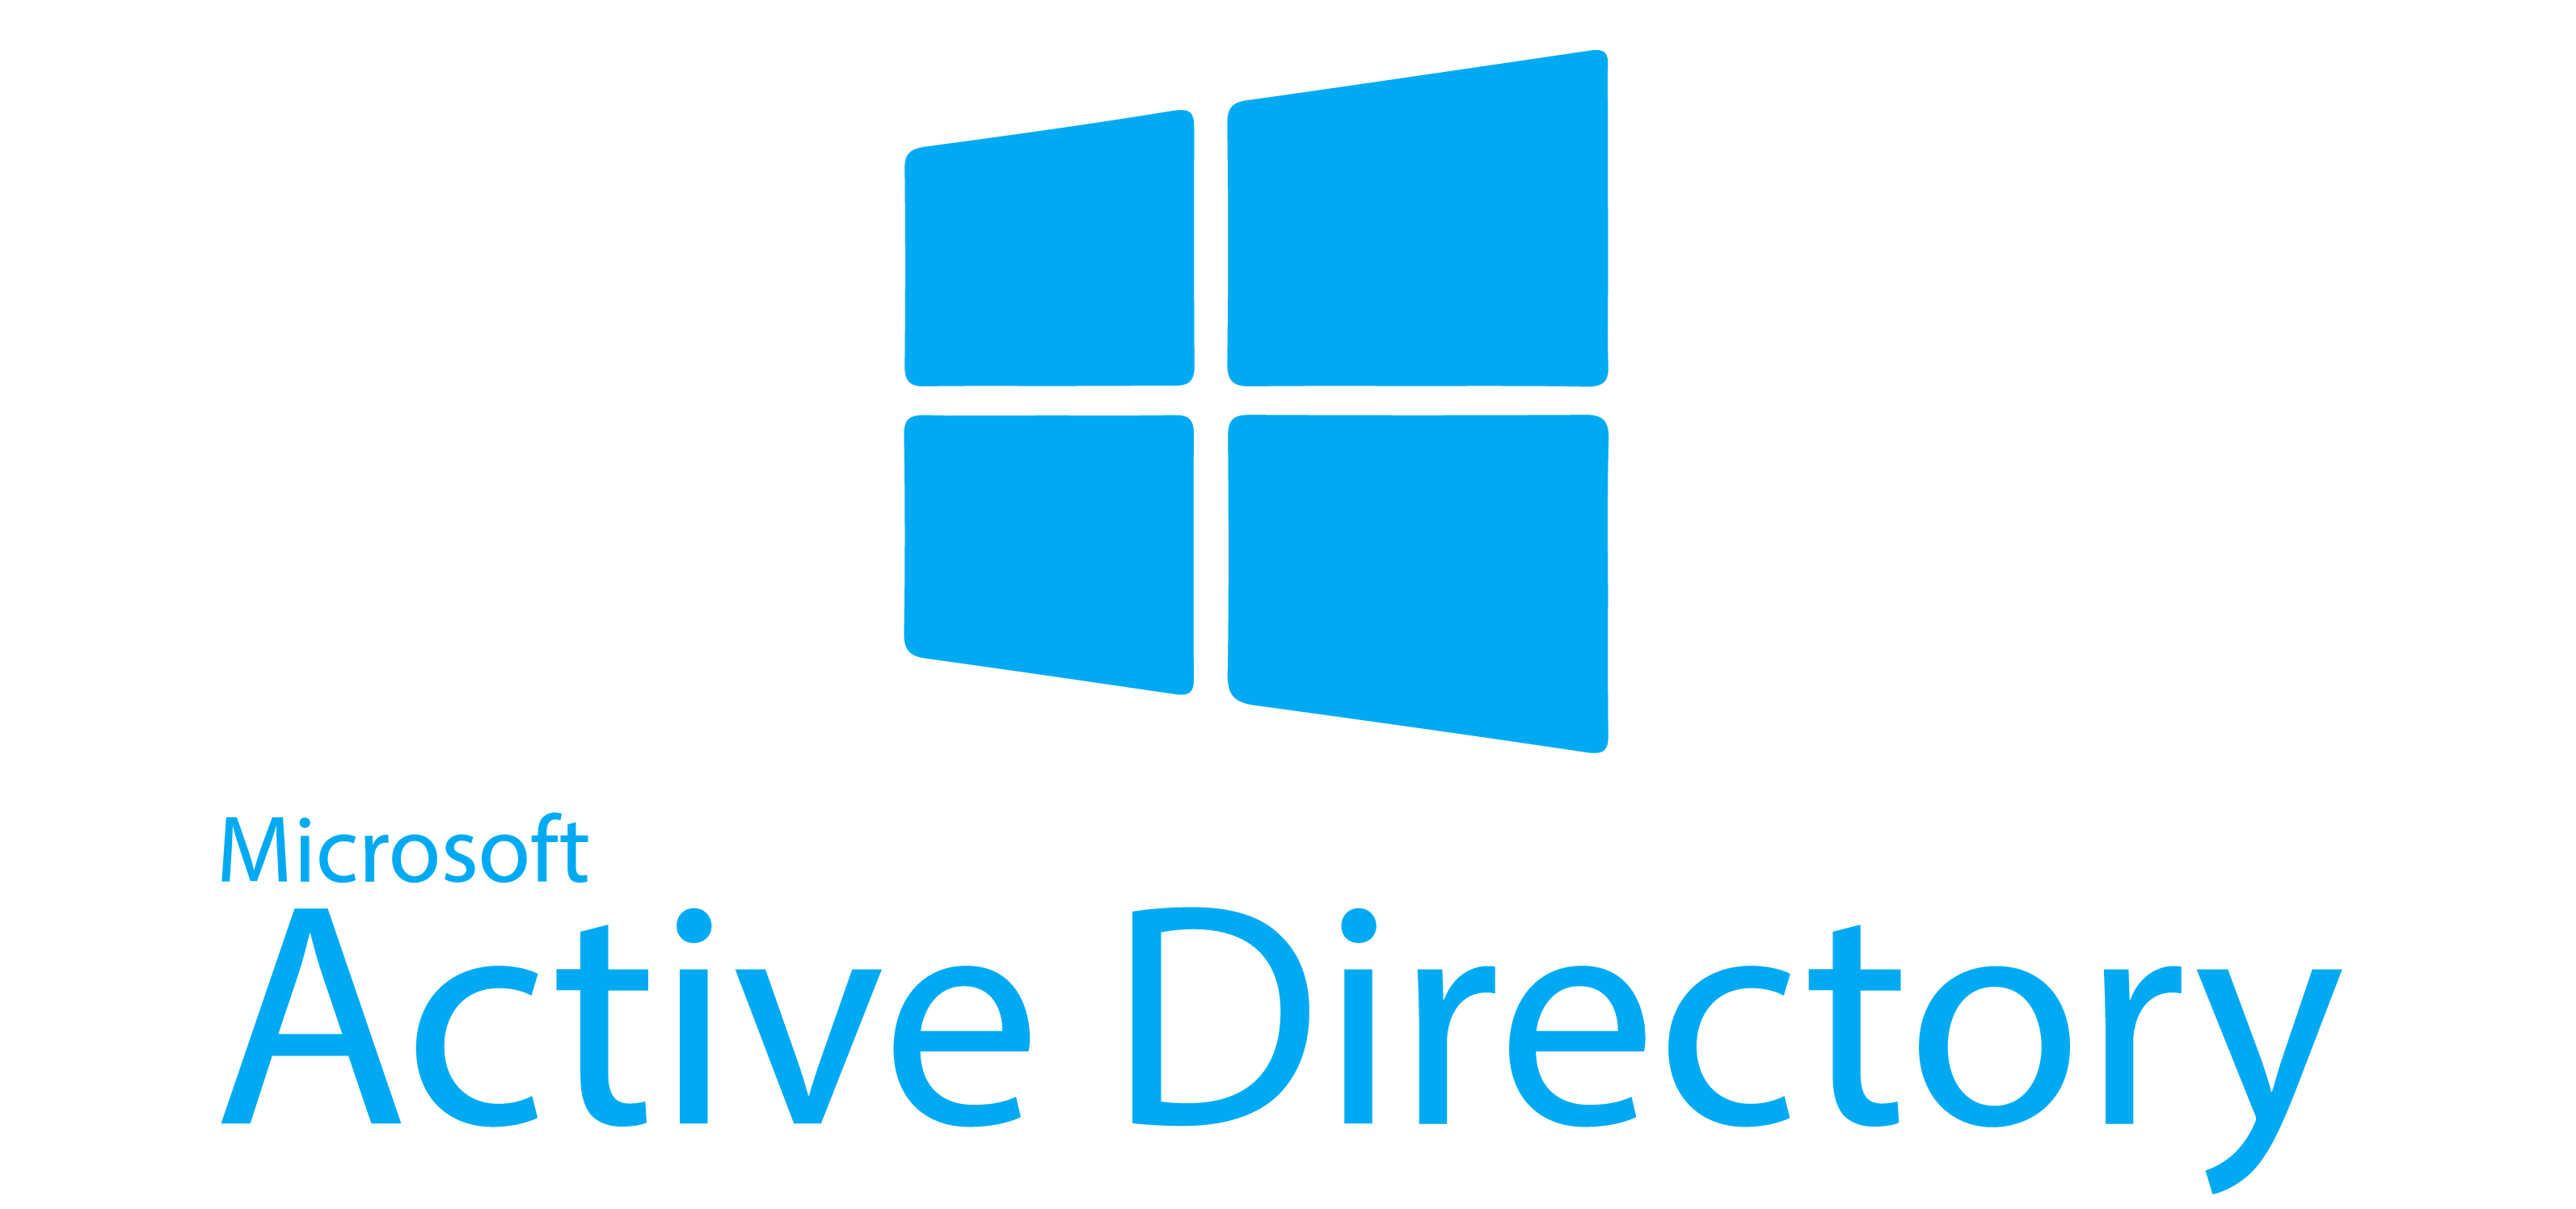 active directory windows 7 32 bit download